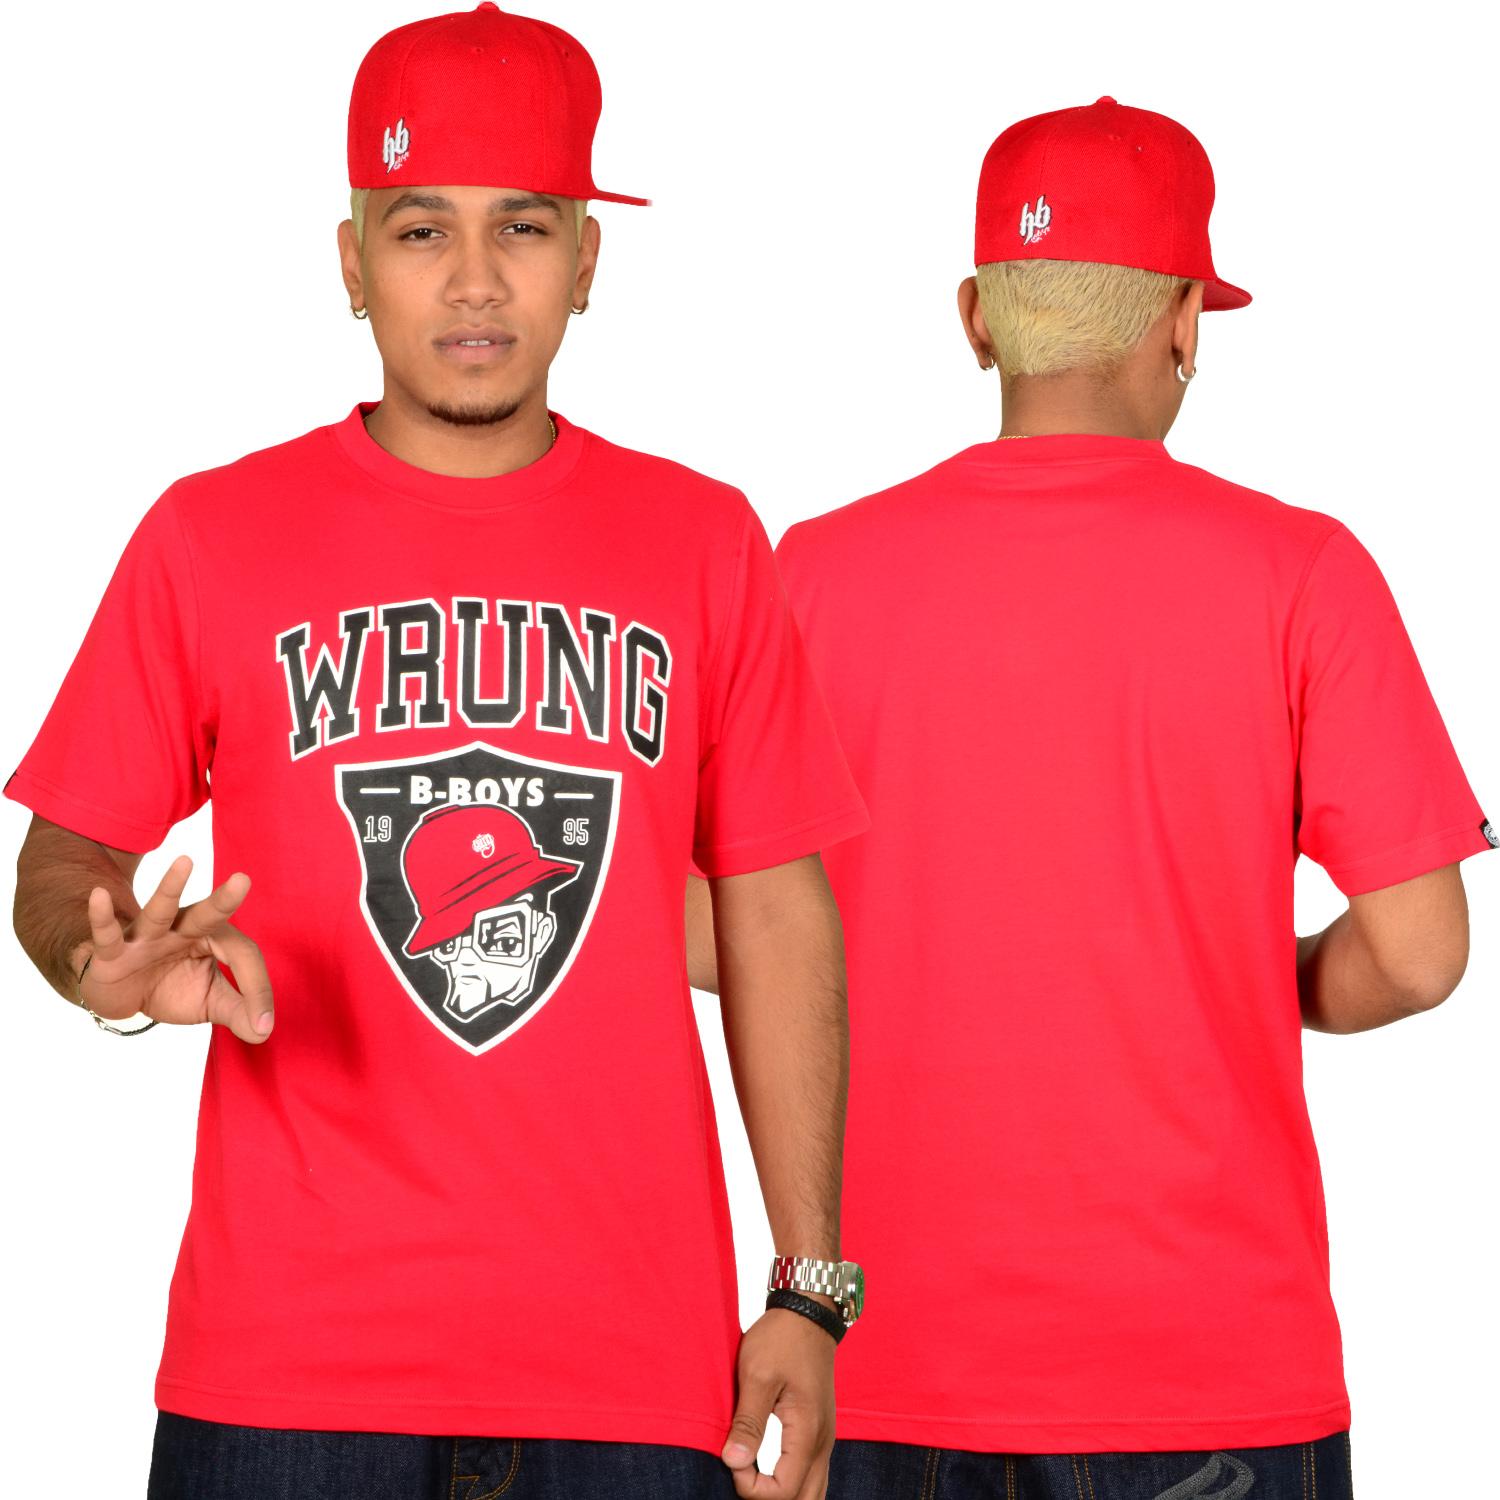 Foto Wrung Division True B-boys Hombres T-shirt Rojo foto 528493